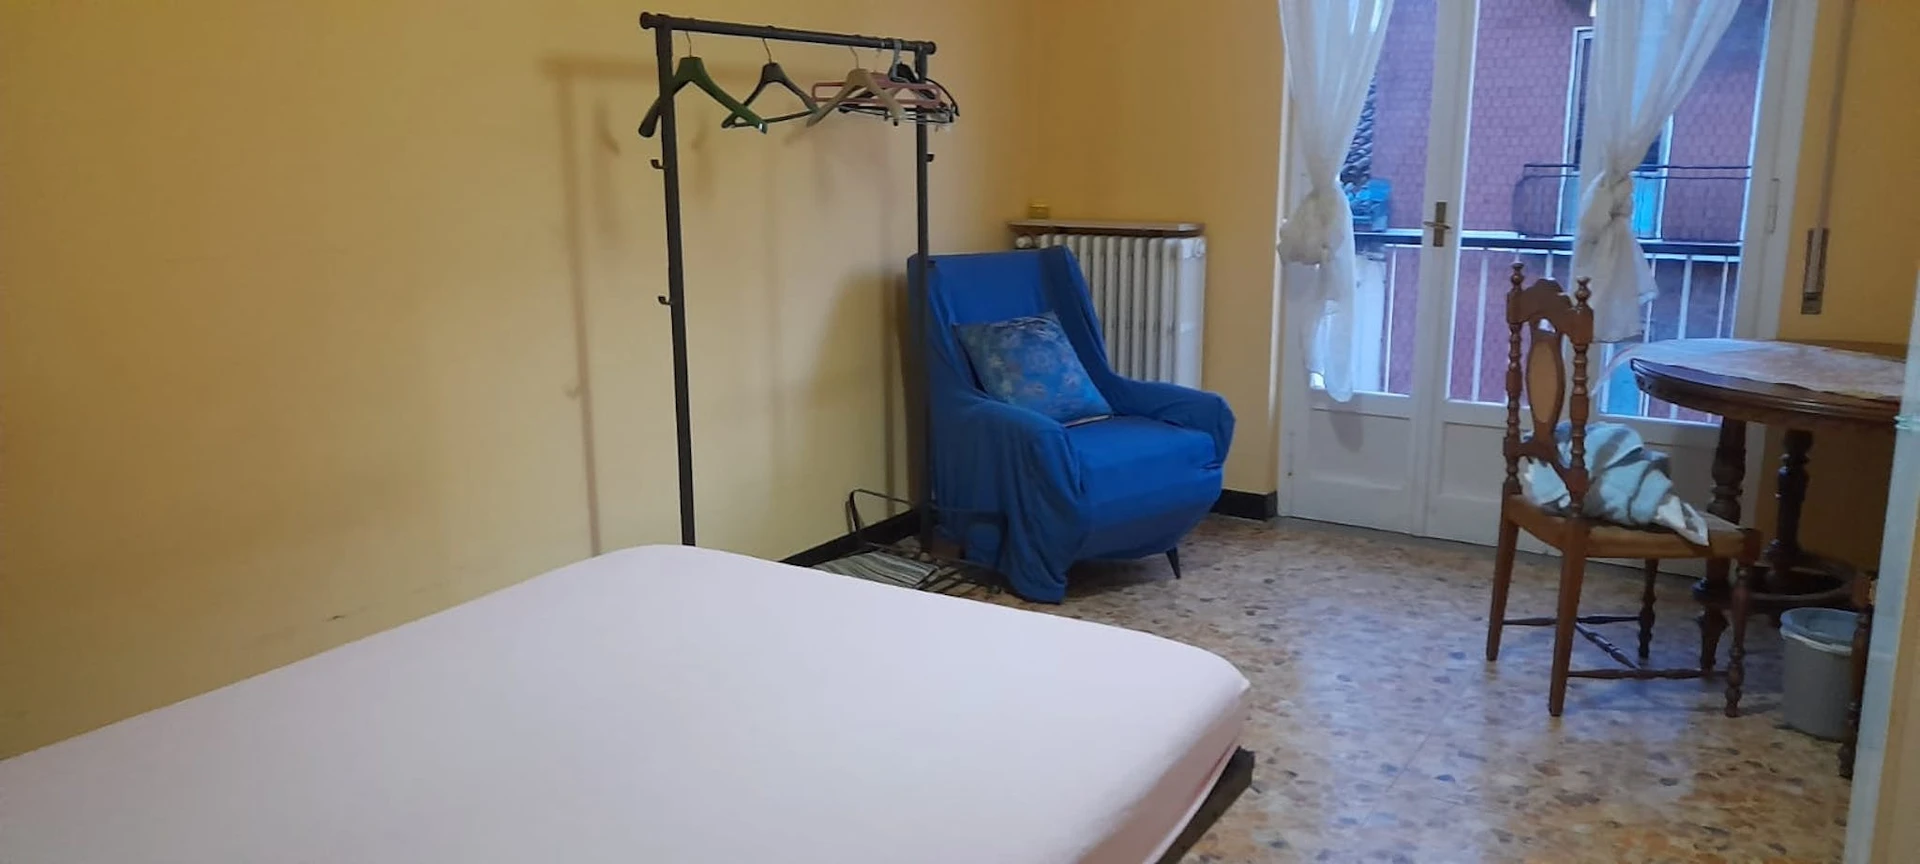 Chambre à louer avec lit double Piacenza